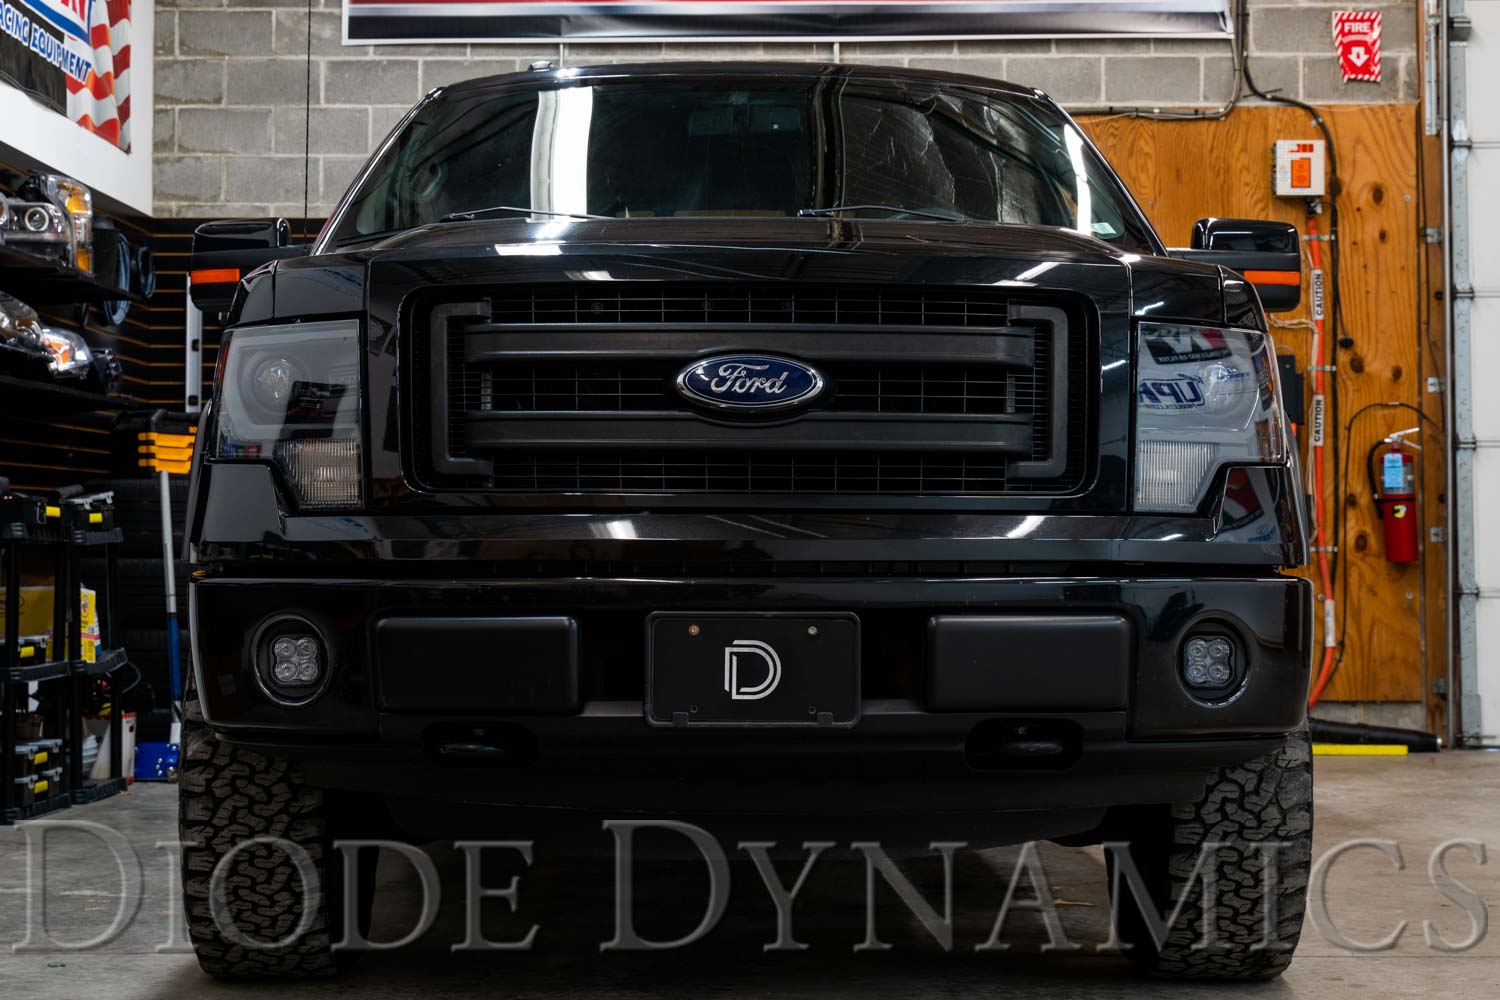 SS3 LED Fog Light Kit for 2011-2014 Ford F-150 Diode Dynamics-